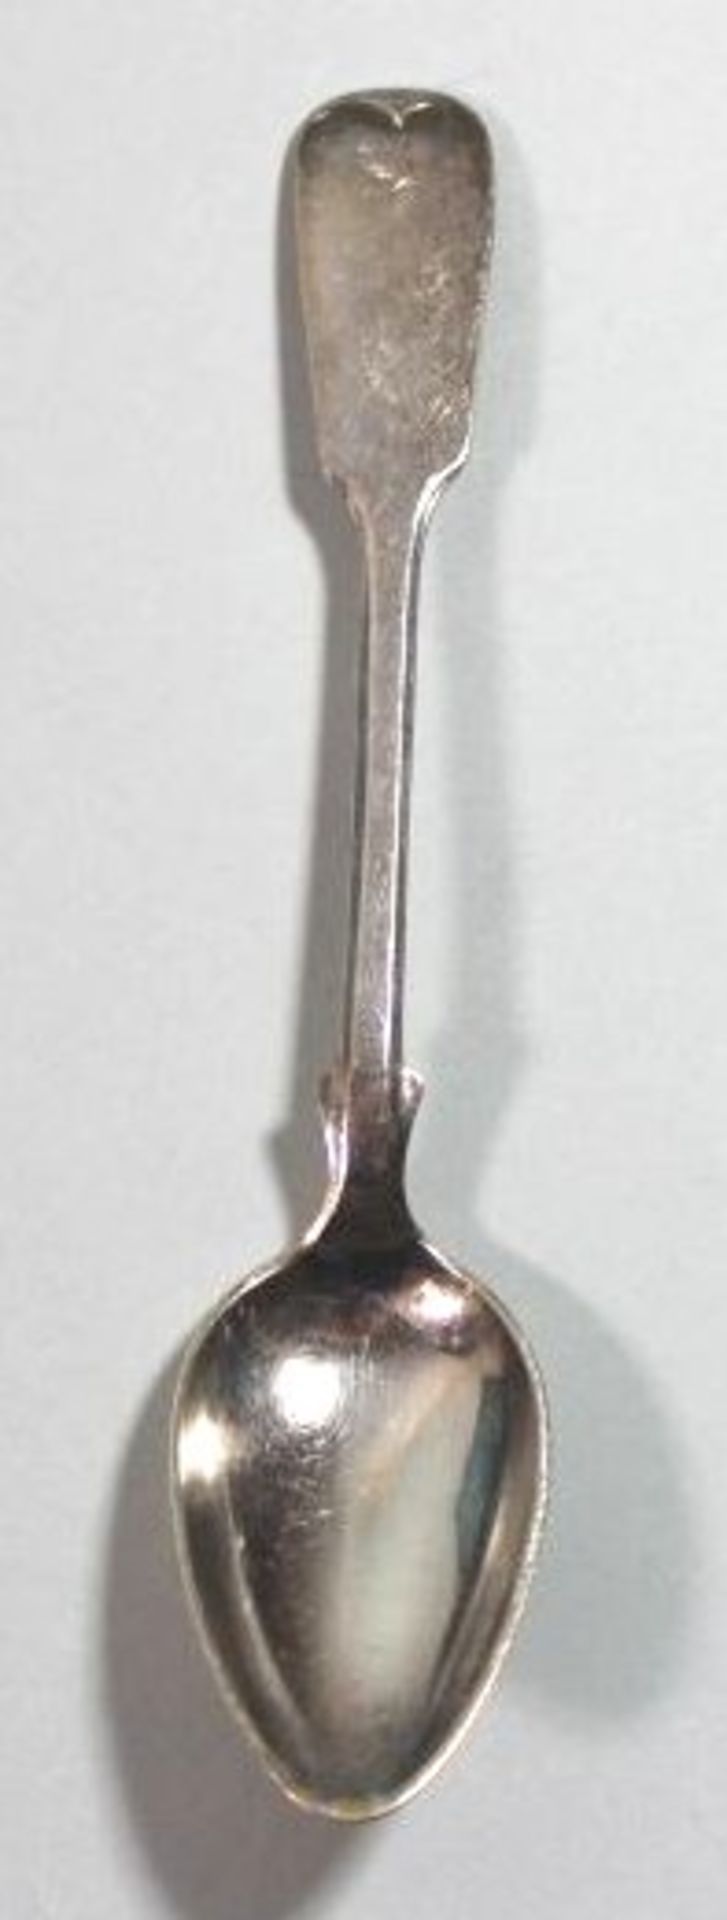 6x Kaffeelöffel, Silber, Spatenform, um 1900, je verso Punktgravur, zus. 80gr., in Kasten, L-14cm. - Bild 2 aus 2